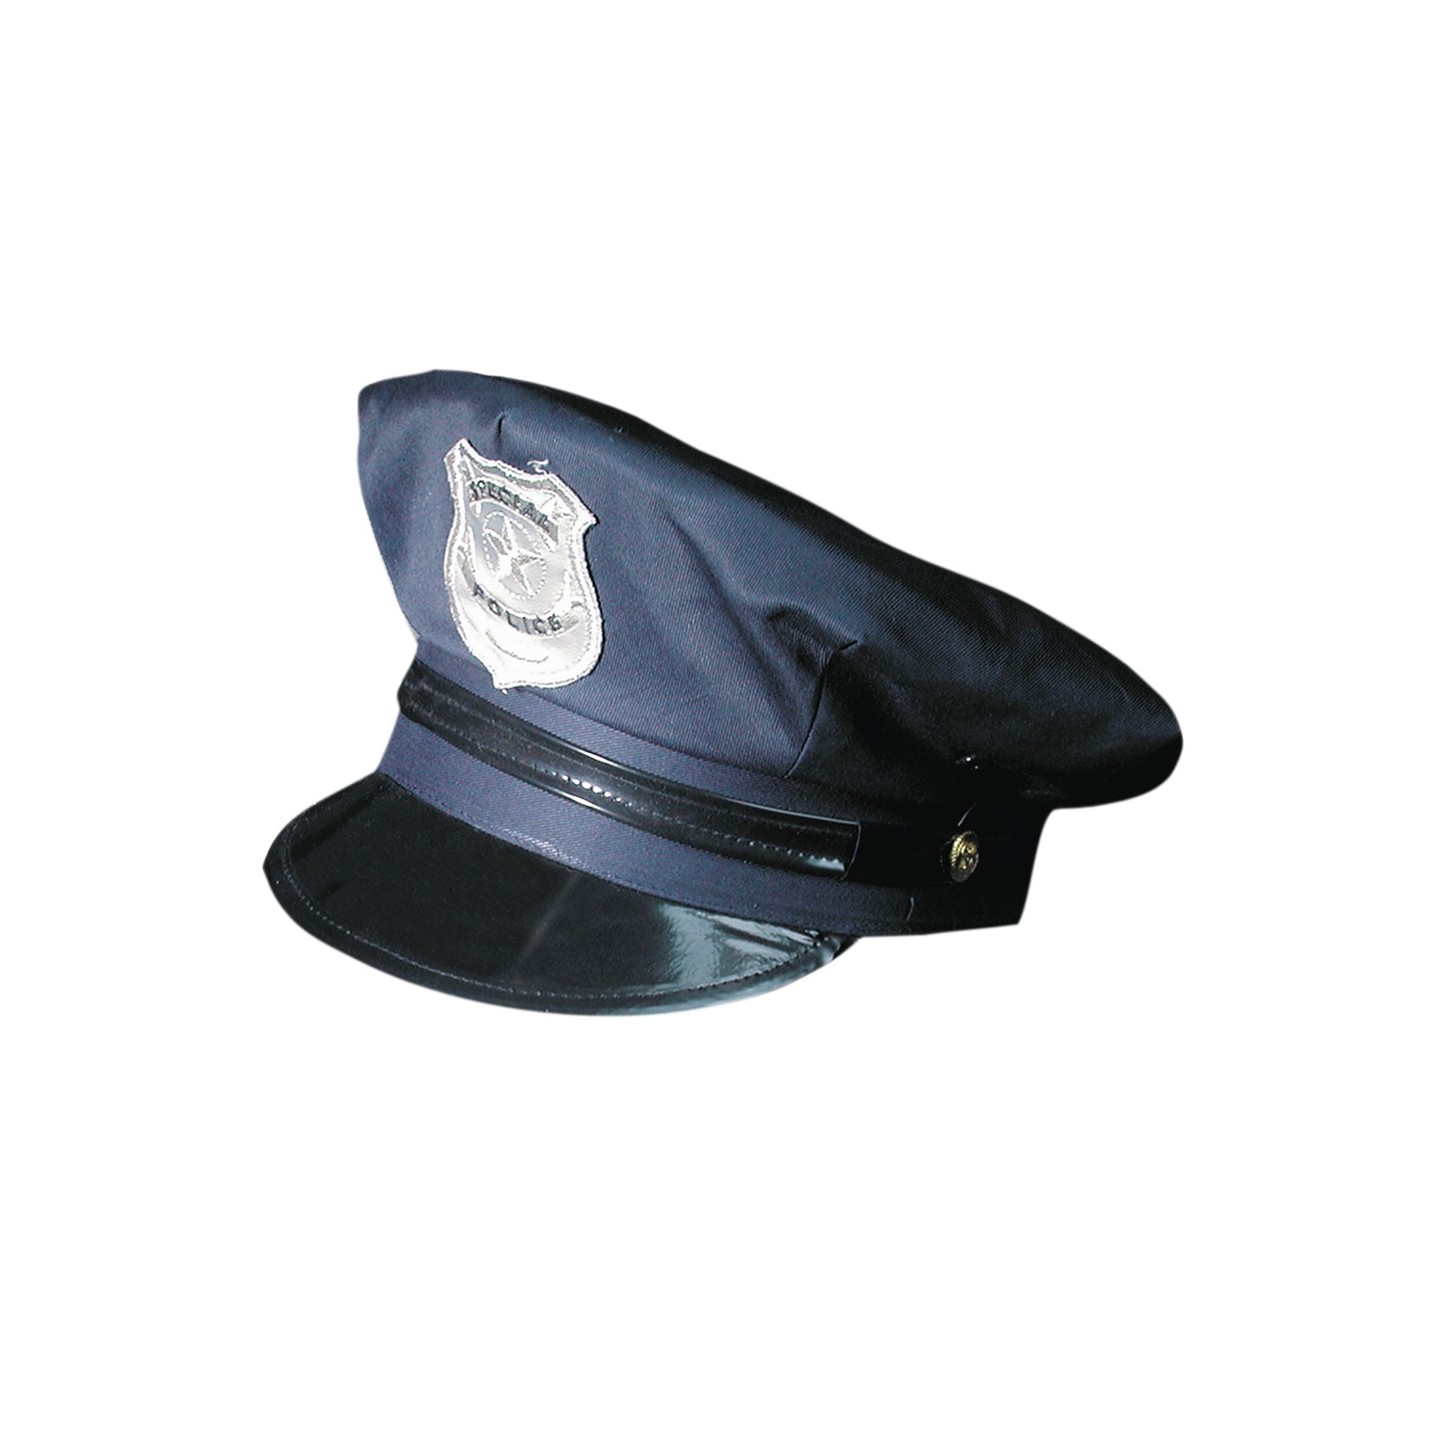 Politiepet volwassenen carnaval politie verkleed accessoires